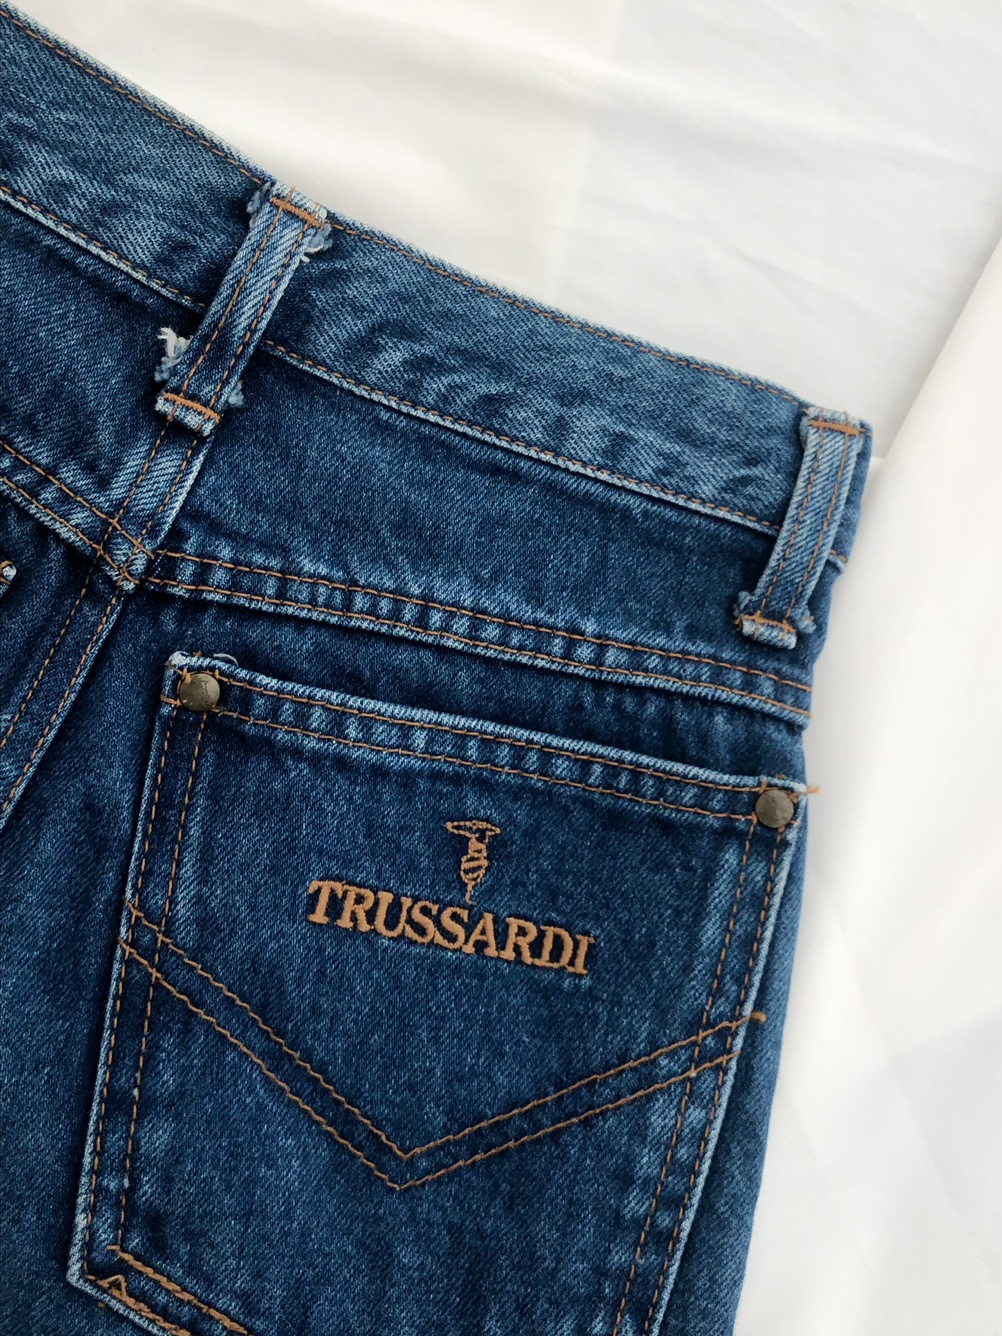 Trussardi Blue Denim High Waist Jeans [23 inch]